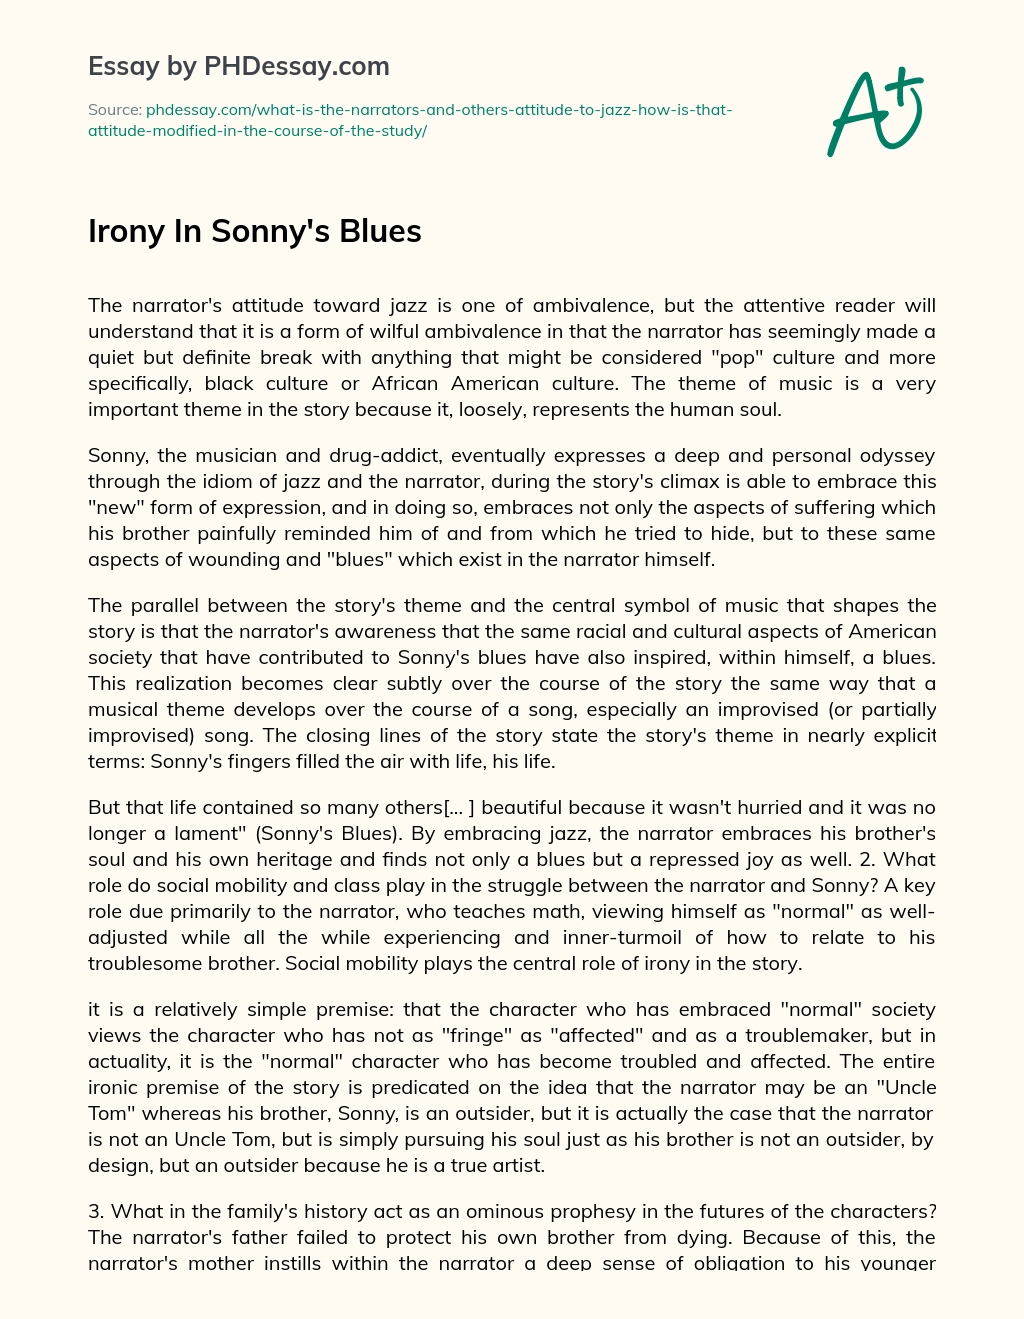 Irony In Sonny’s Blues essay